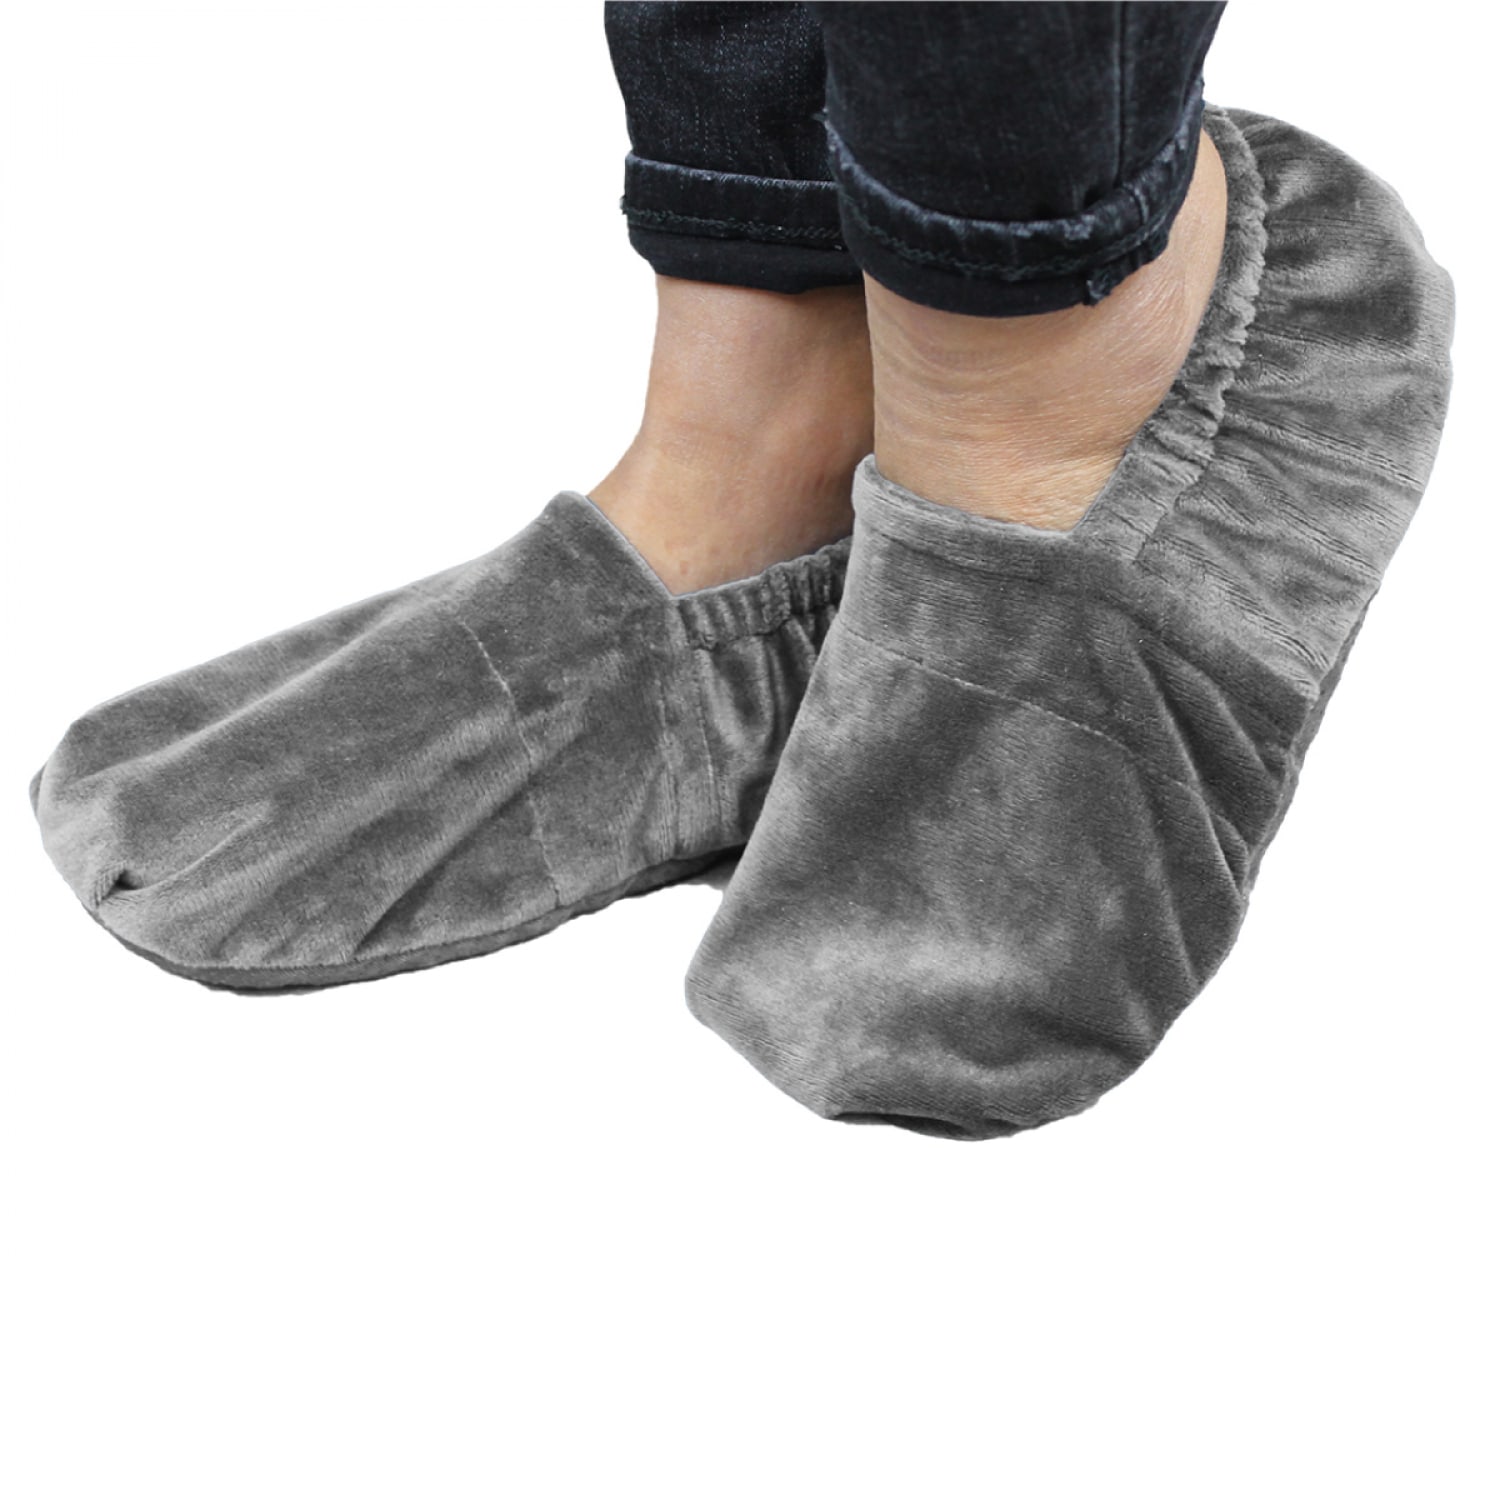 Chaussettes chauffantes pour dormir – Boutique N°1 de vêtement chauffant